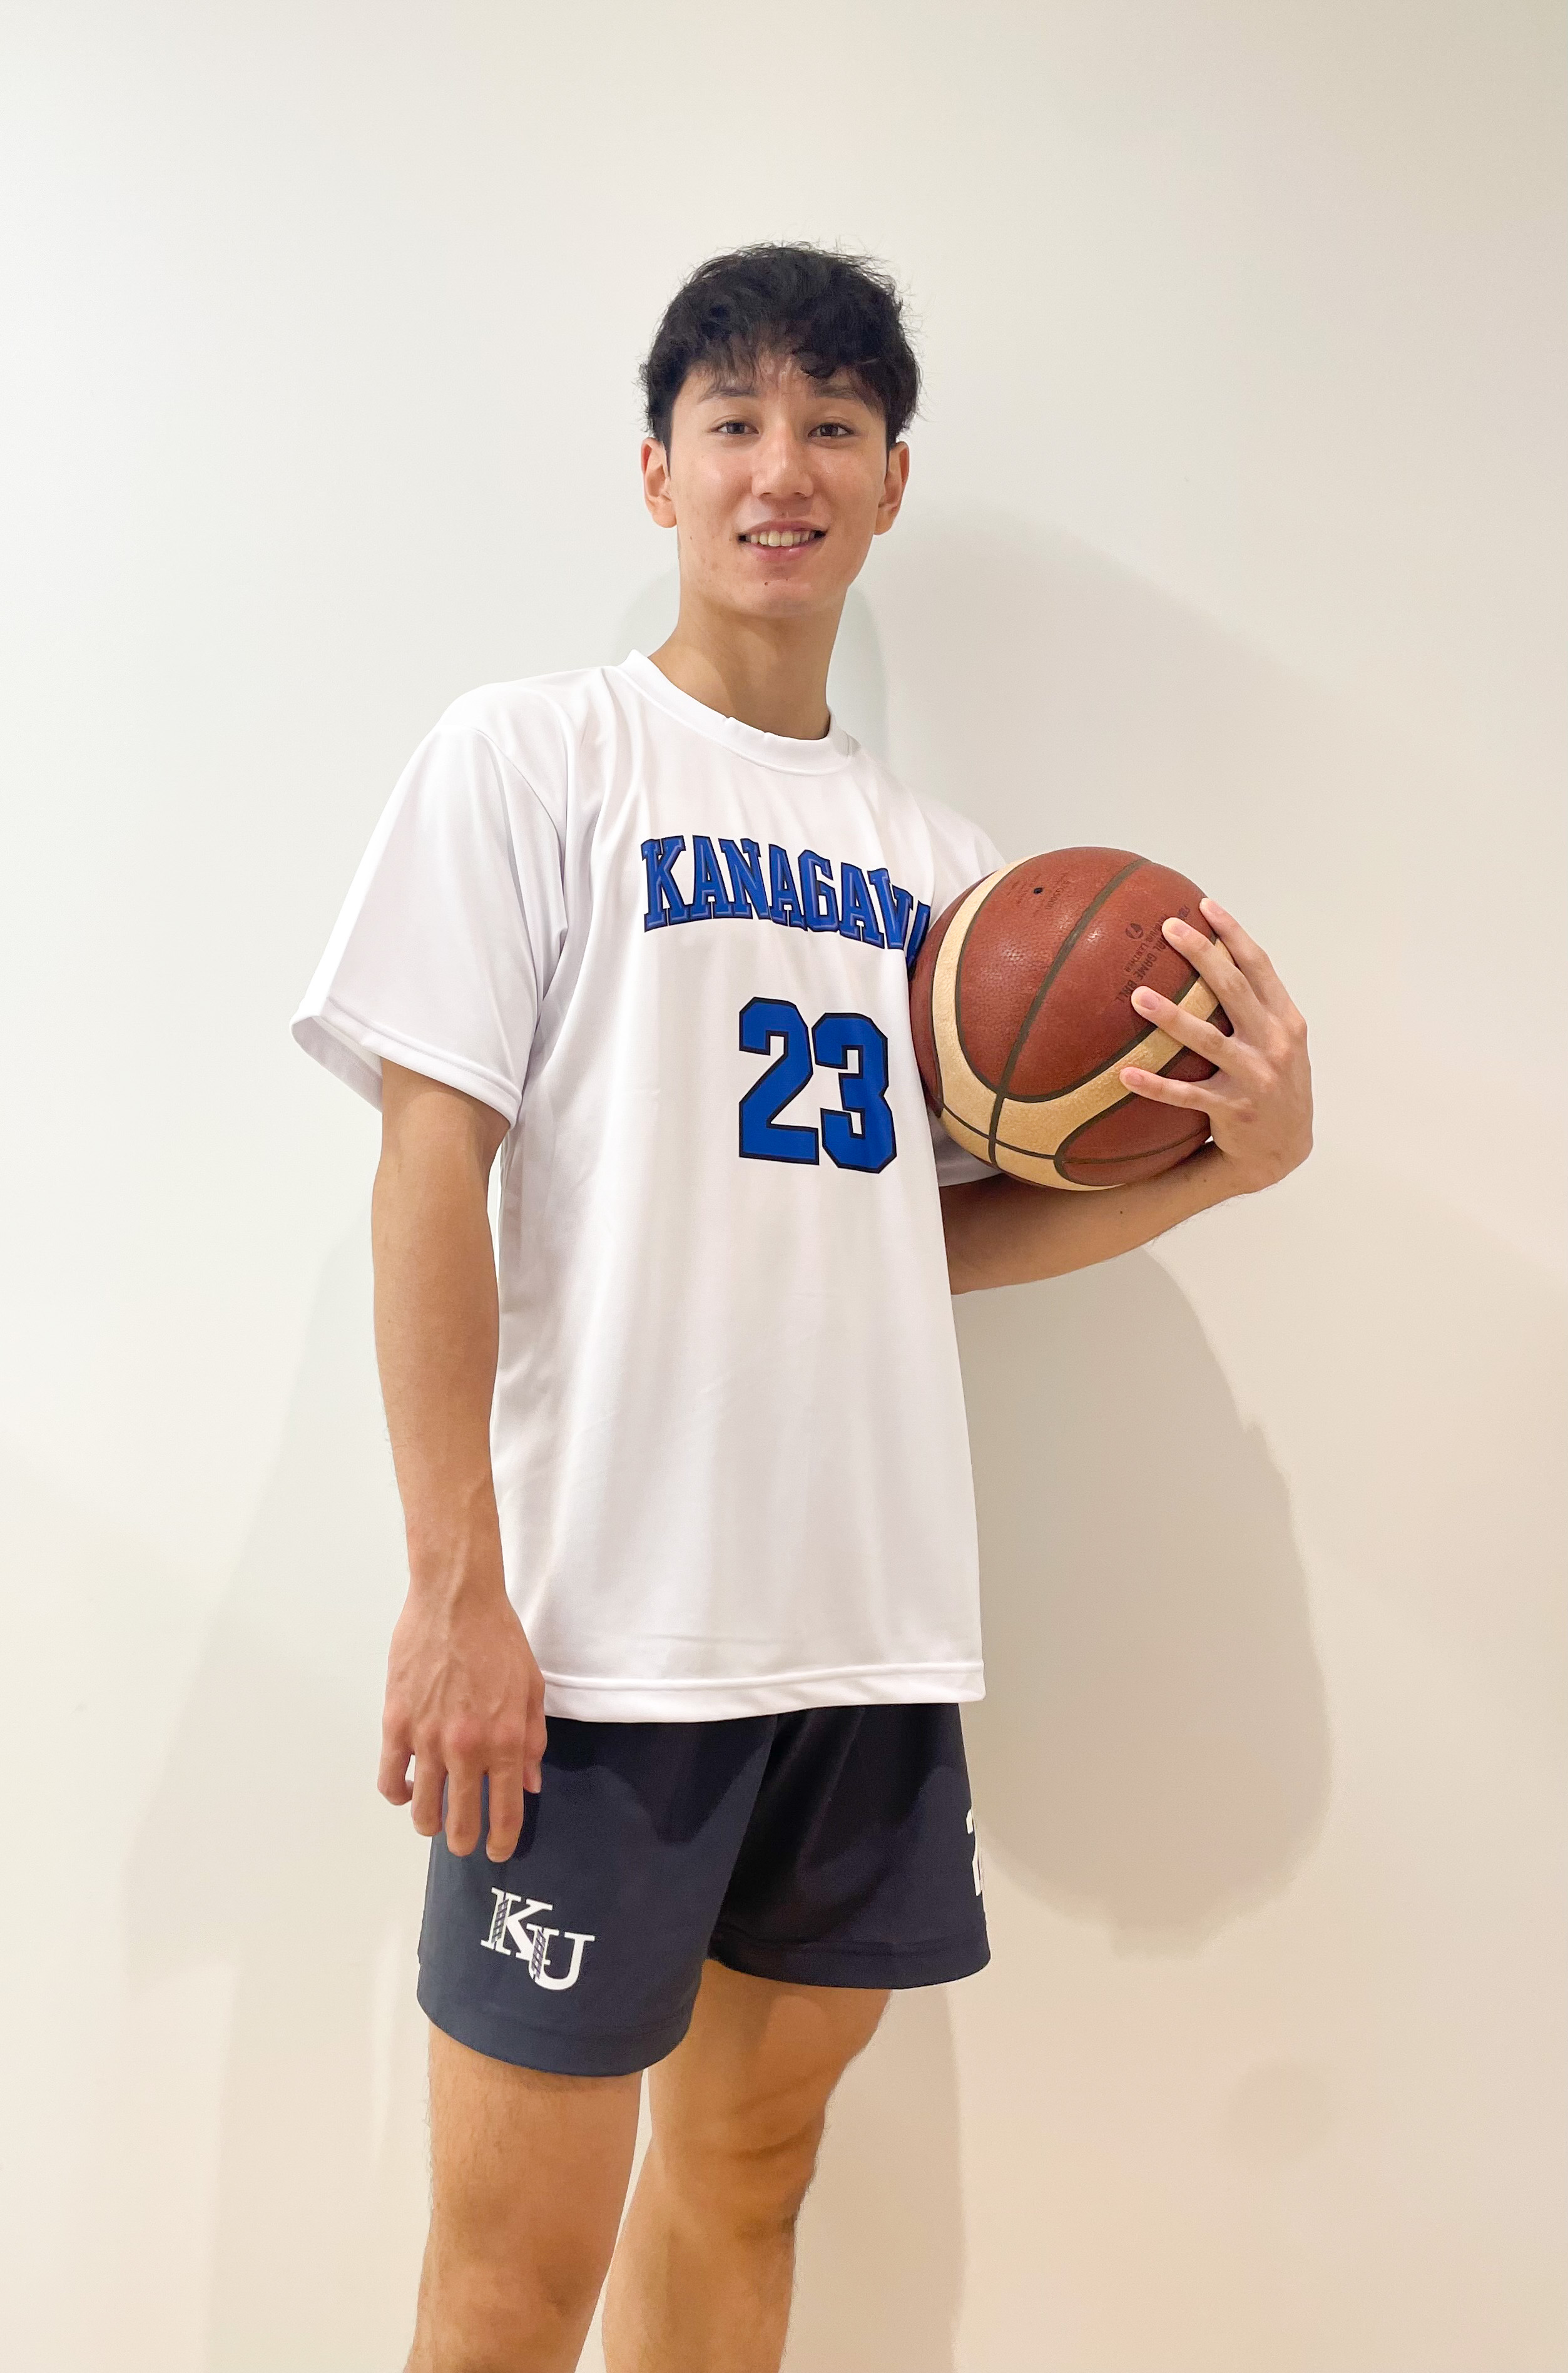 全国総量無料で 神奈川大学 バスケ部 ジップパーカー バスケットボール 